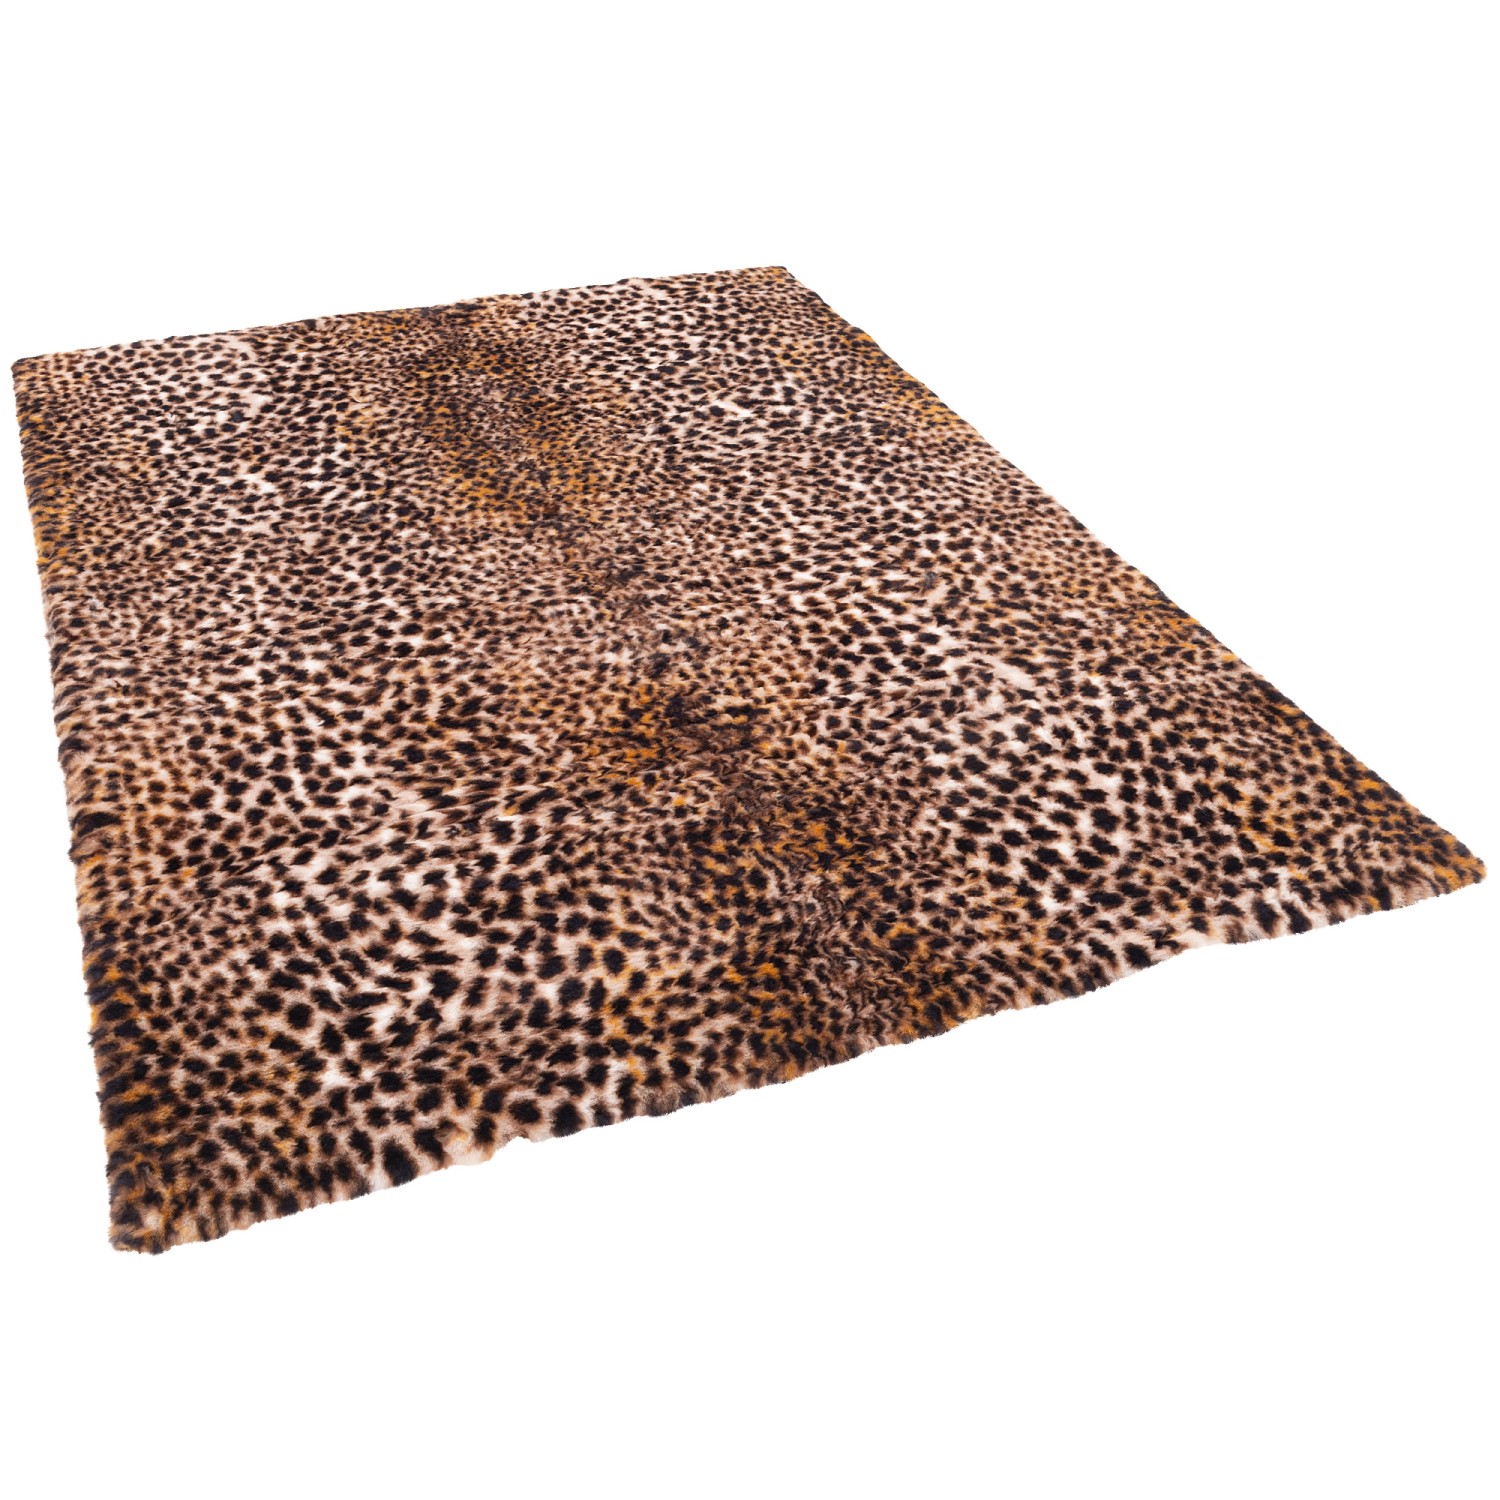 Pergamon Luxus Super Soft Fellteppich Pearl Leopard Braun 120x170cm günstig online kaufen